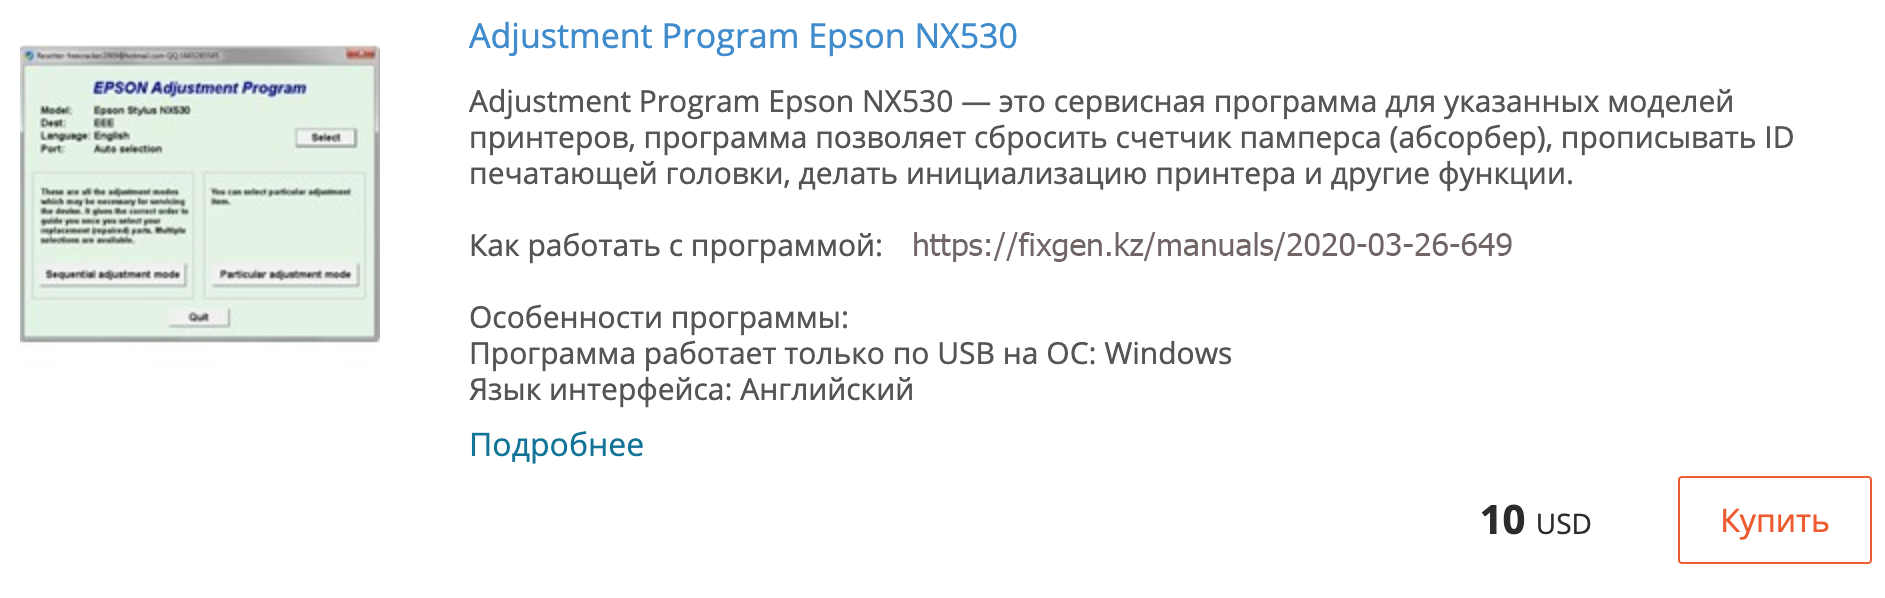 Купить Adjustment program Epson NX530 